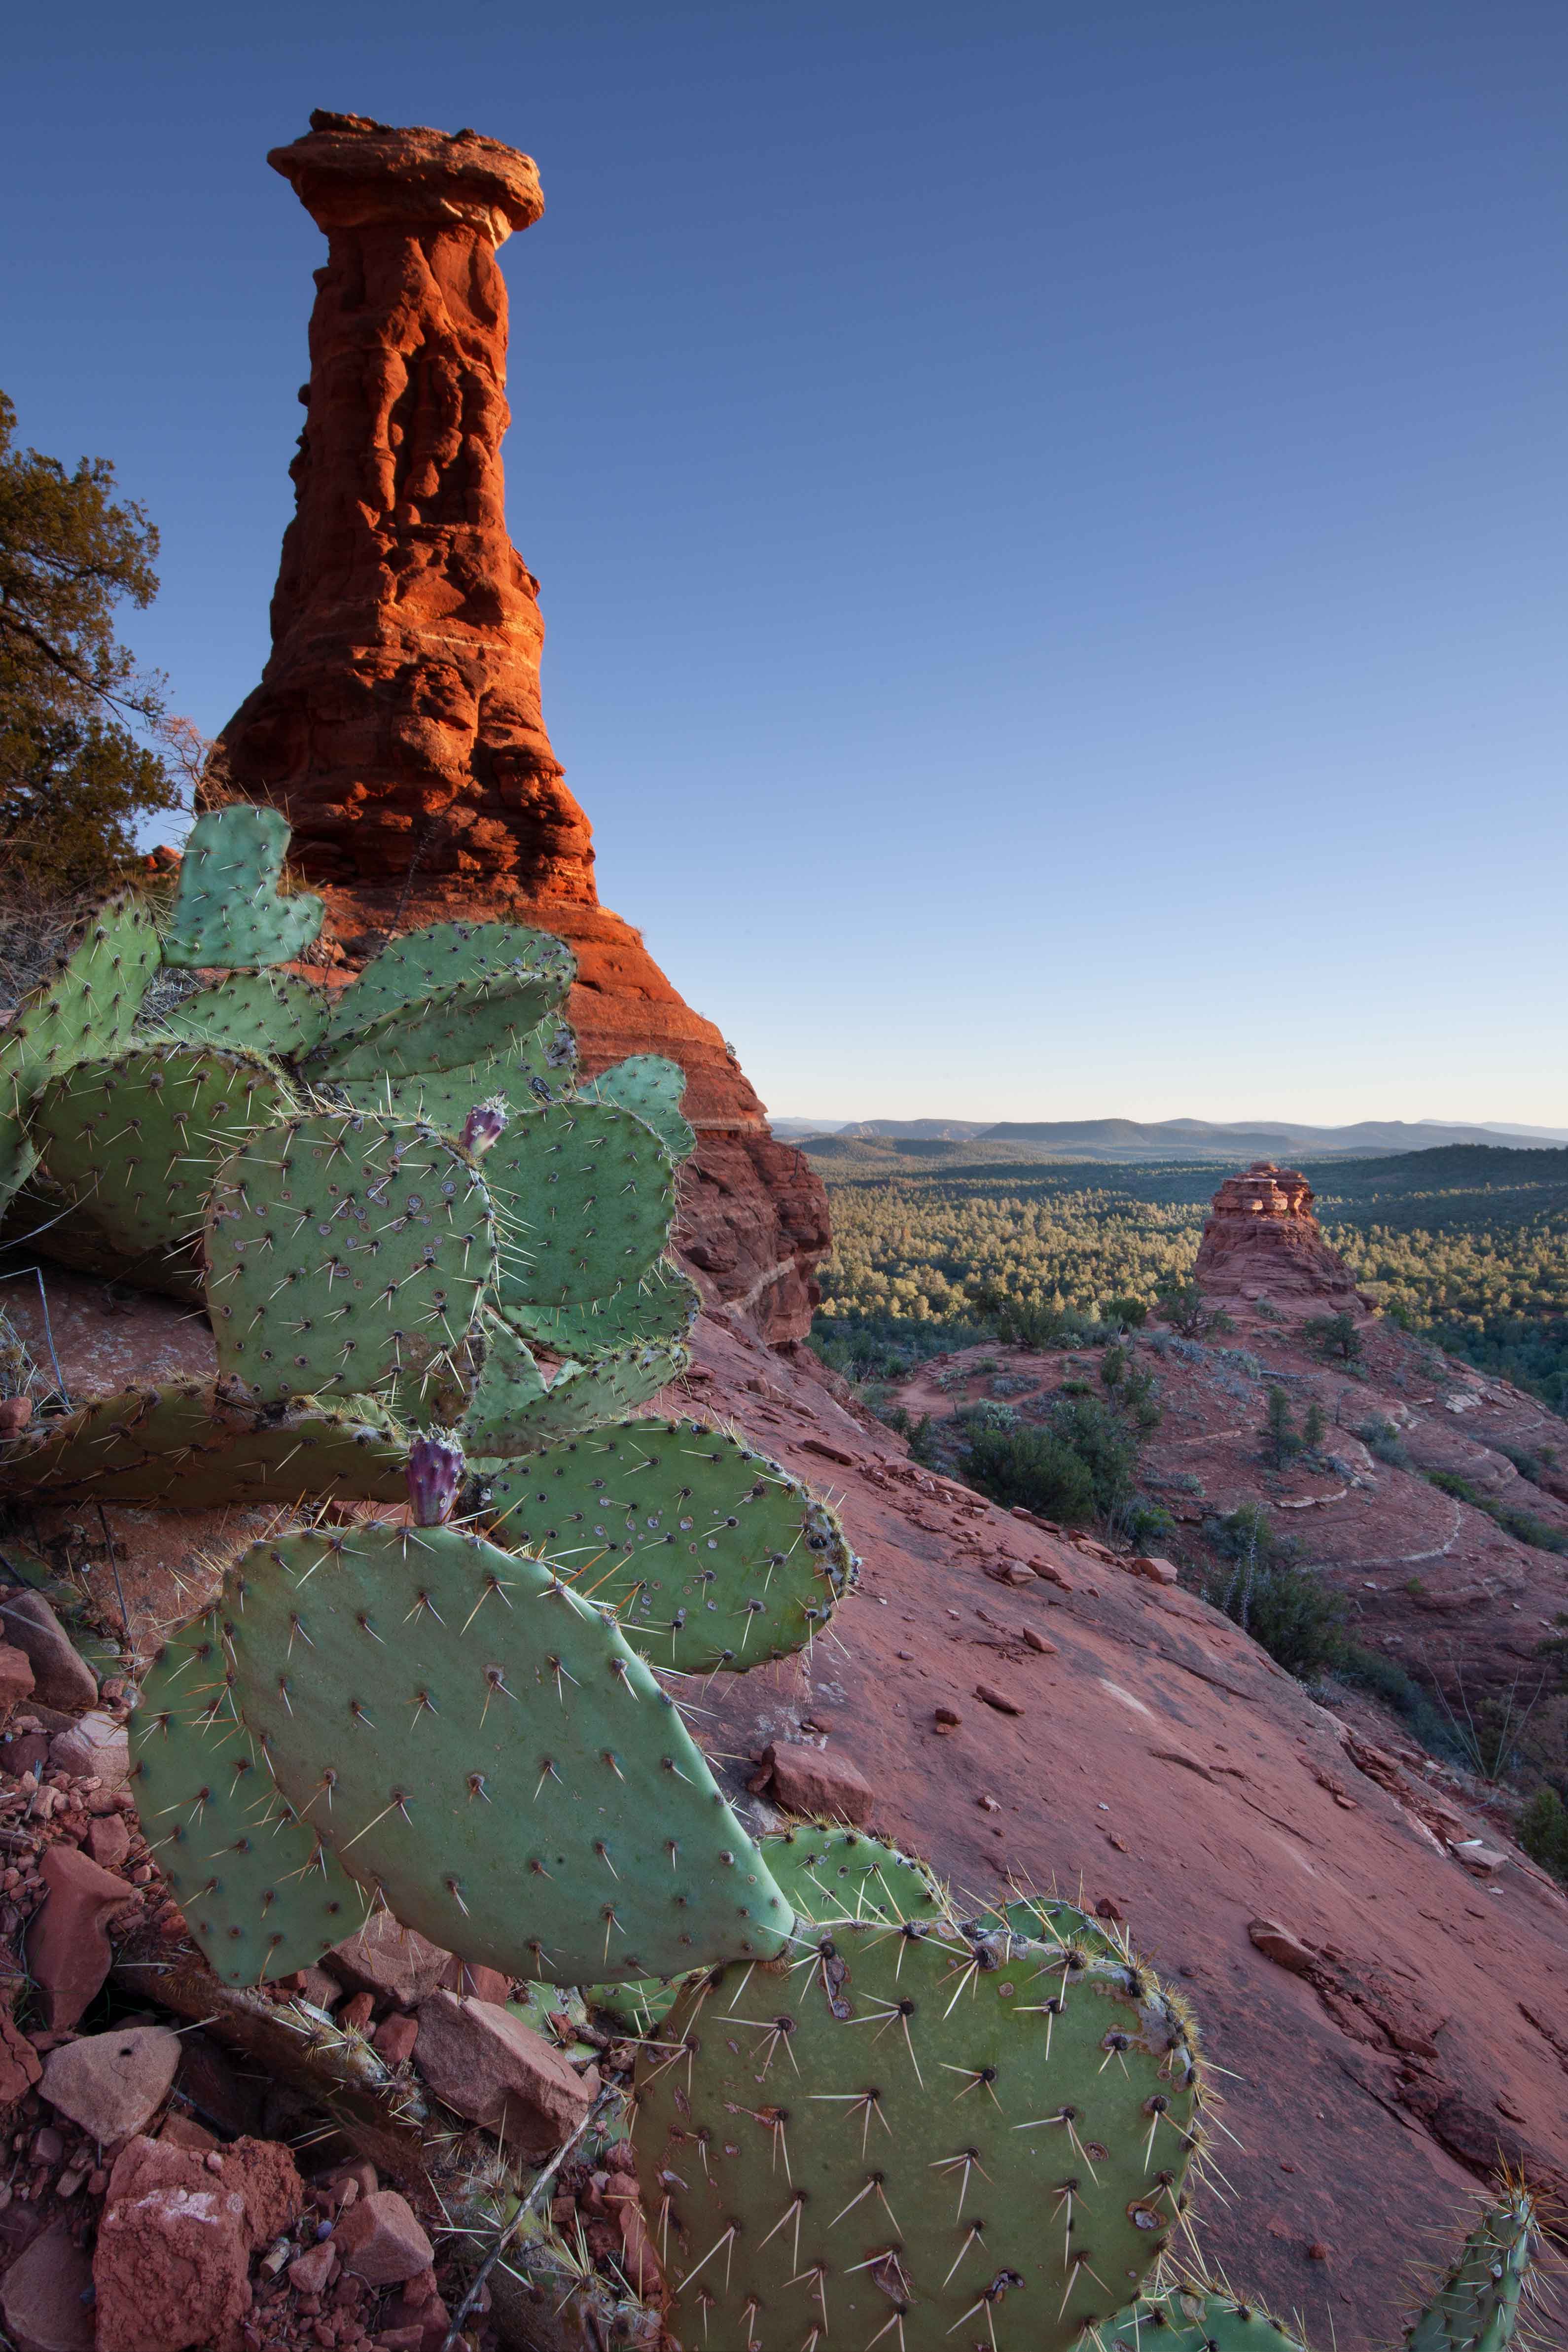 The Kachina Woman rock formation looms over pricky pear cactus at Boynton Canyon near Sedona, Arizona